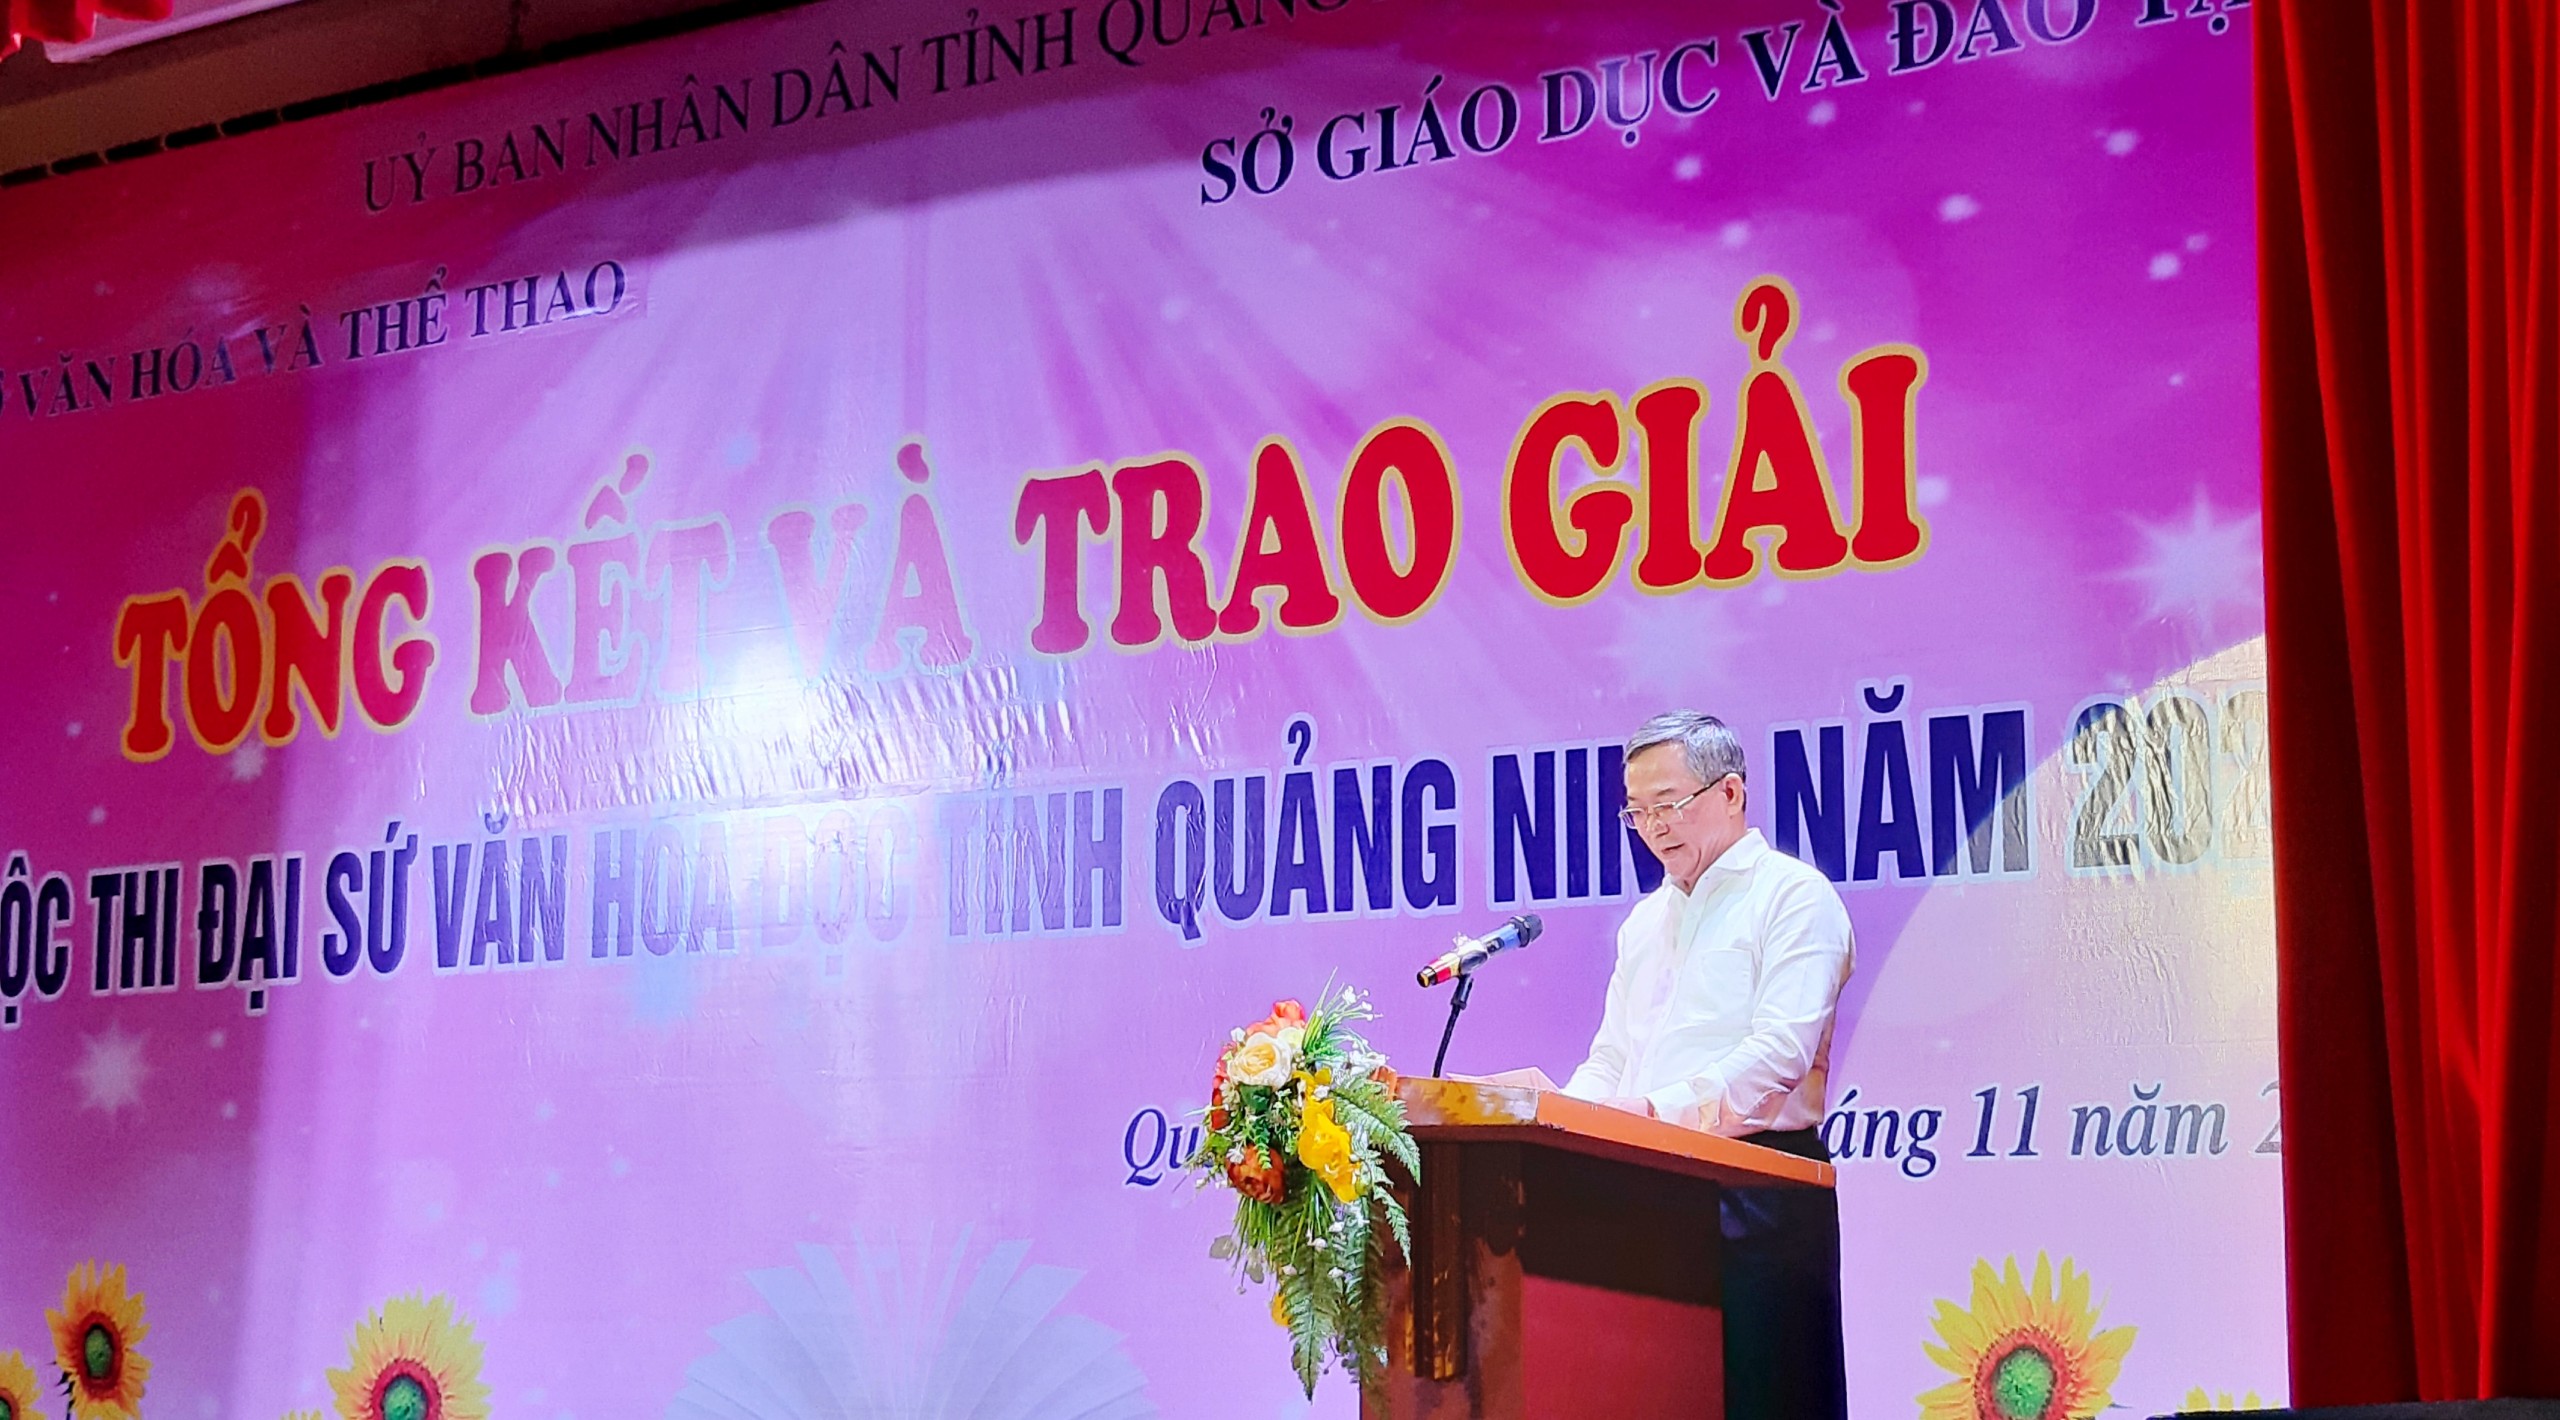 Tổng kết và trao giải Cuộc thi Đại sứ văn hóa đọc tỉnh Quảng Ninh  năm 2023